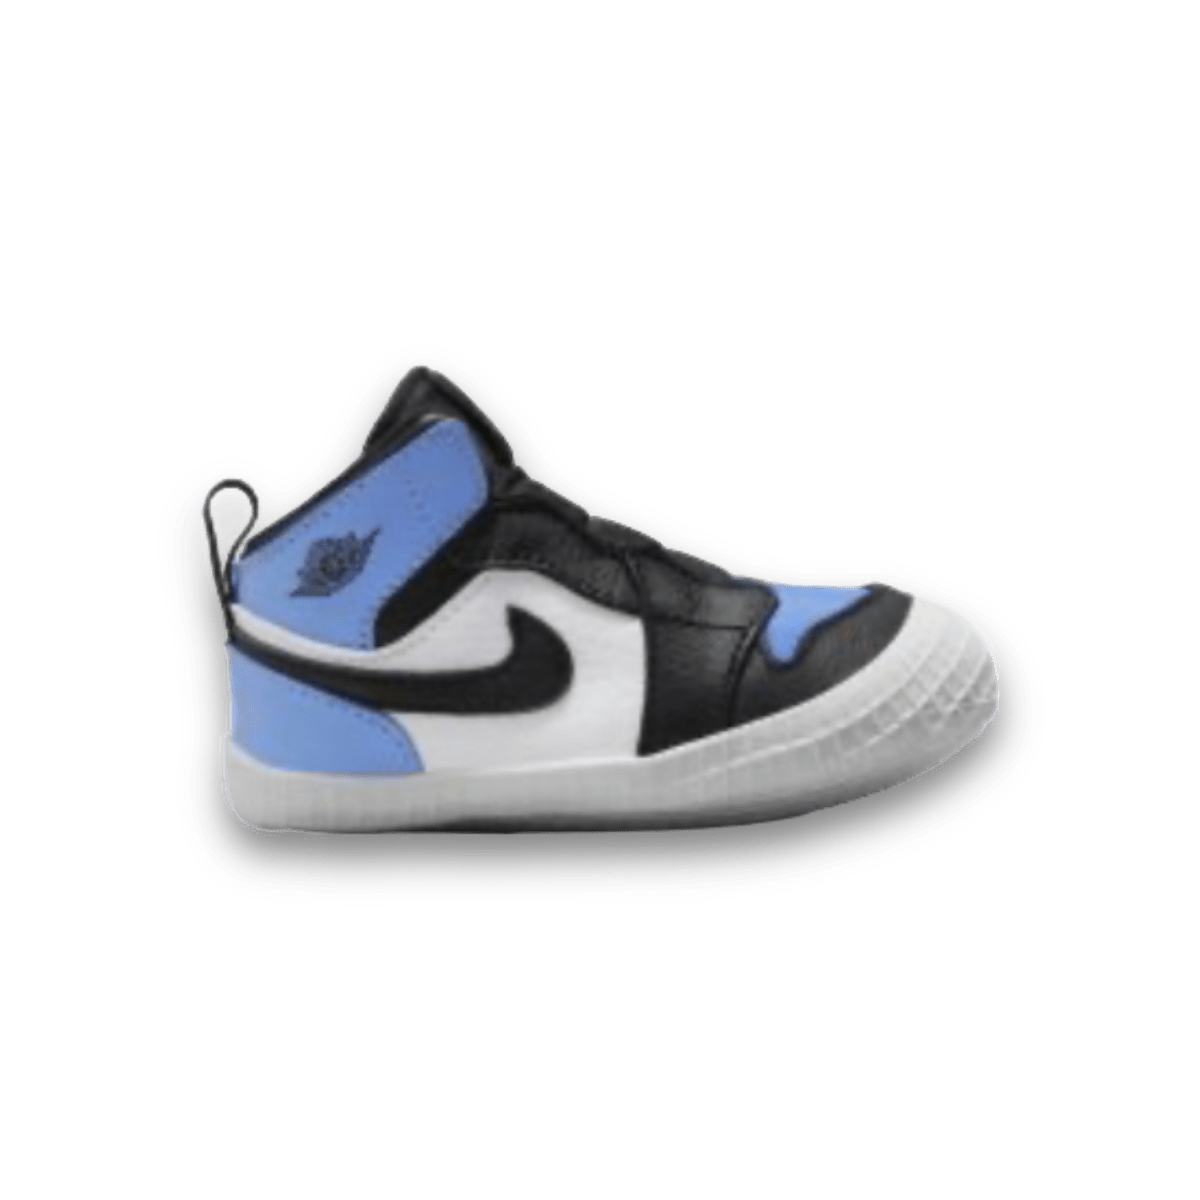 Air Jordan 1 Crib Bootie UNC Black Toe' - Toddler - High Sneaker - Jawns on Fire Sneakers & Streetwear